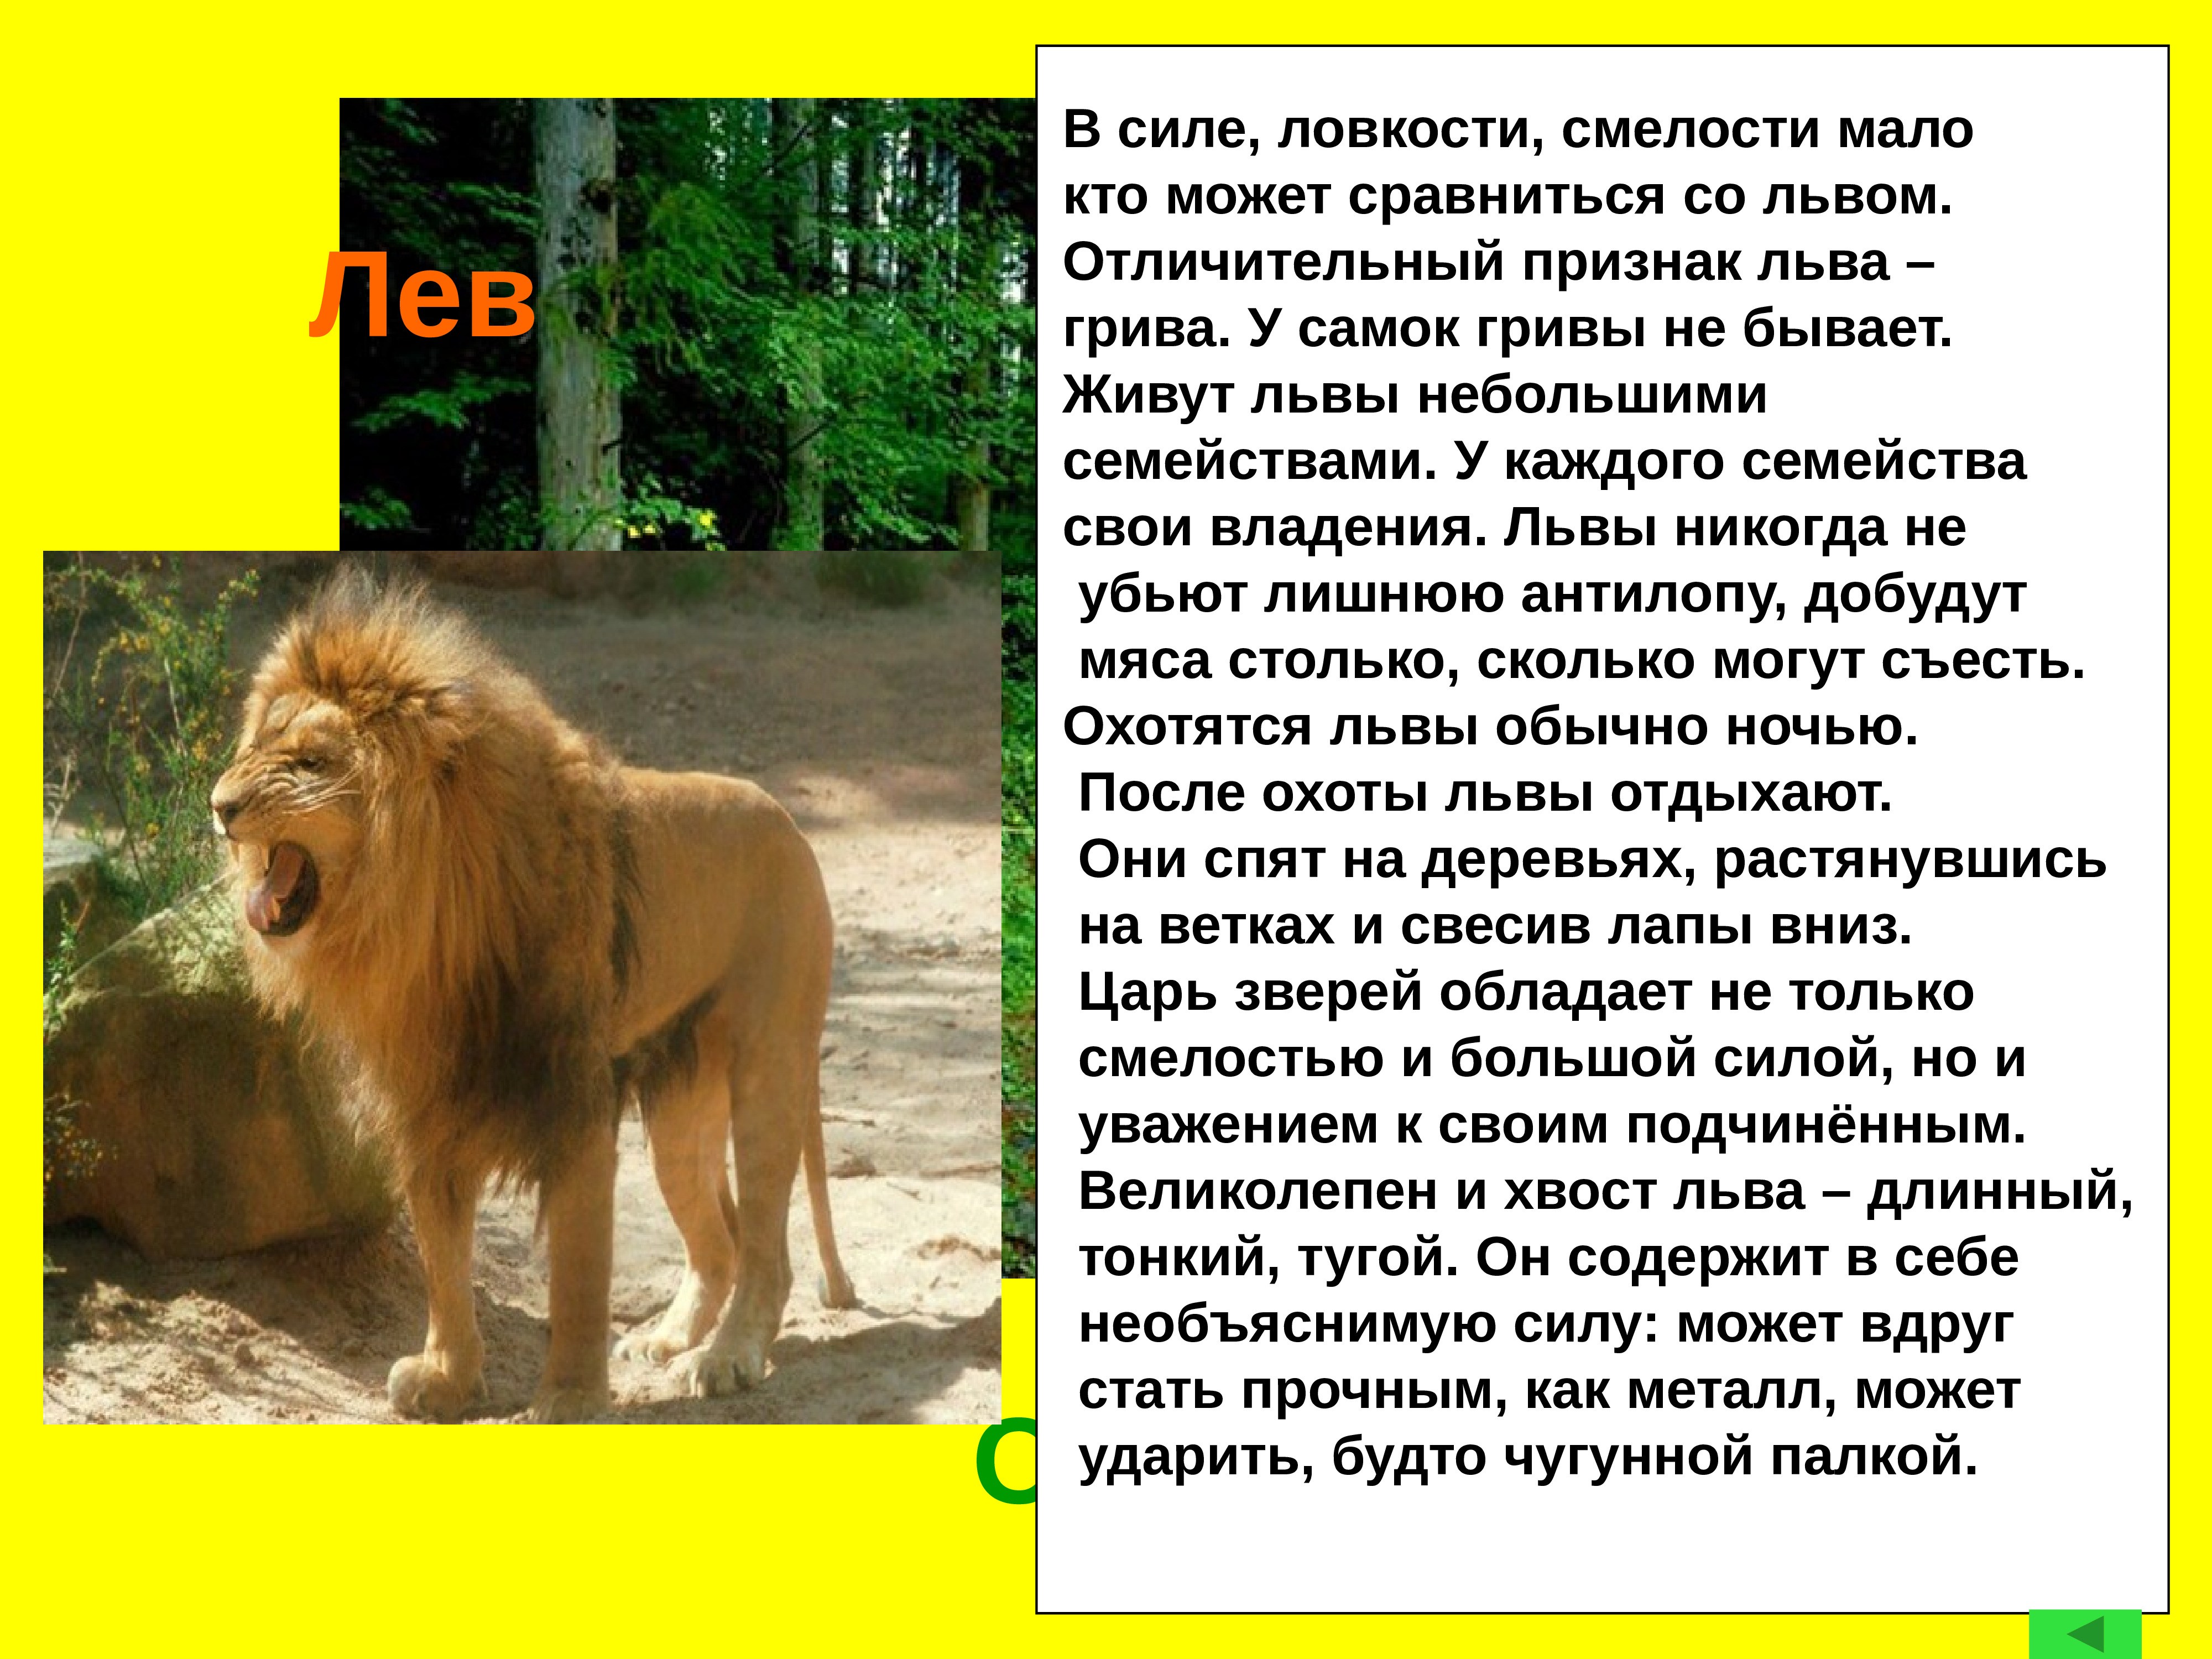 Информация про львов. Рассказ про Льва. Описание Льва. Лев красная книга. Сообщение про Льва для первого класса.